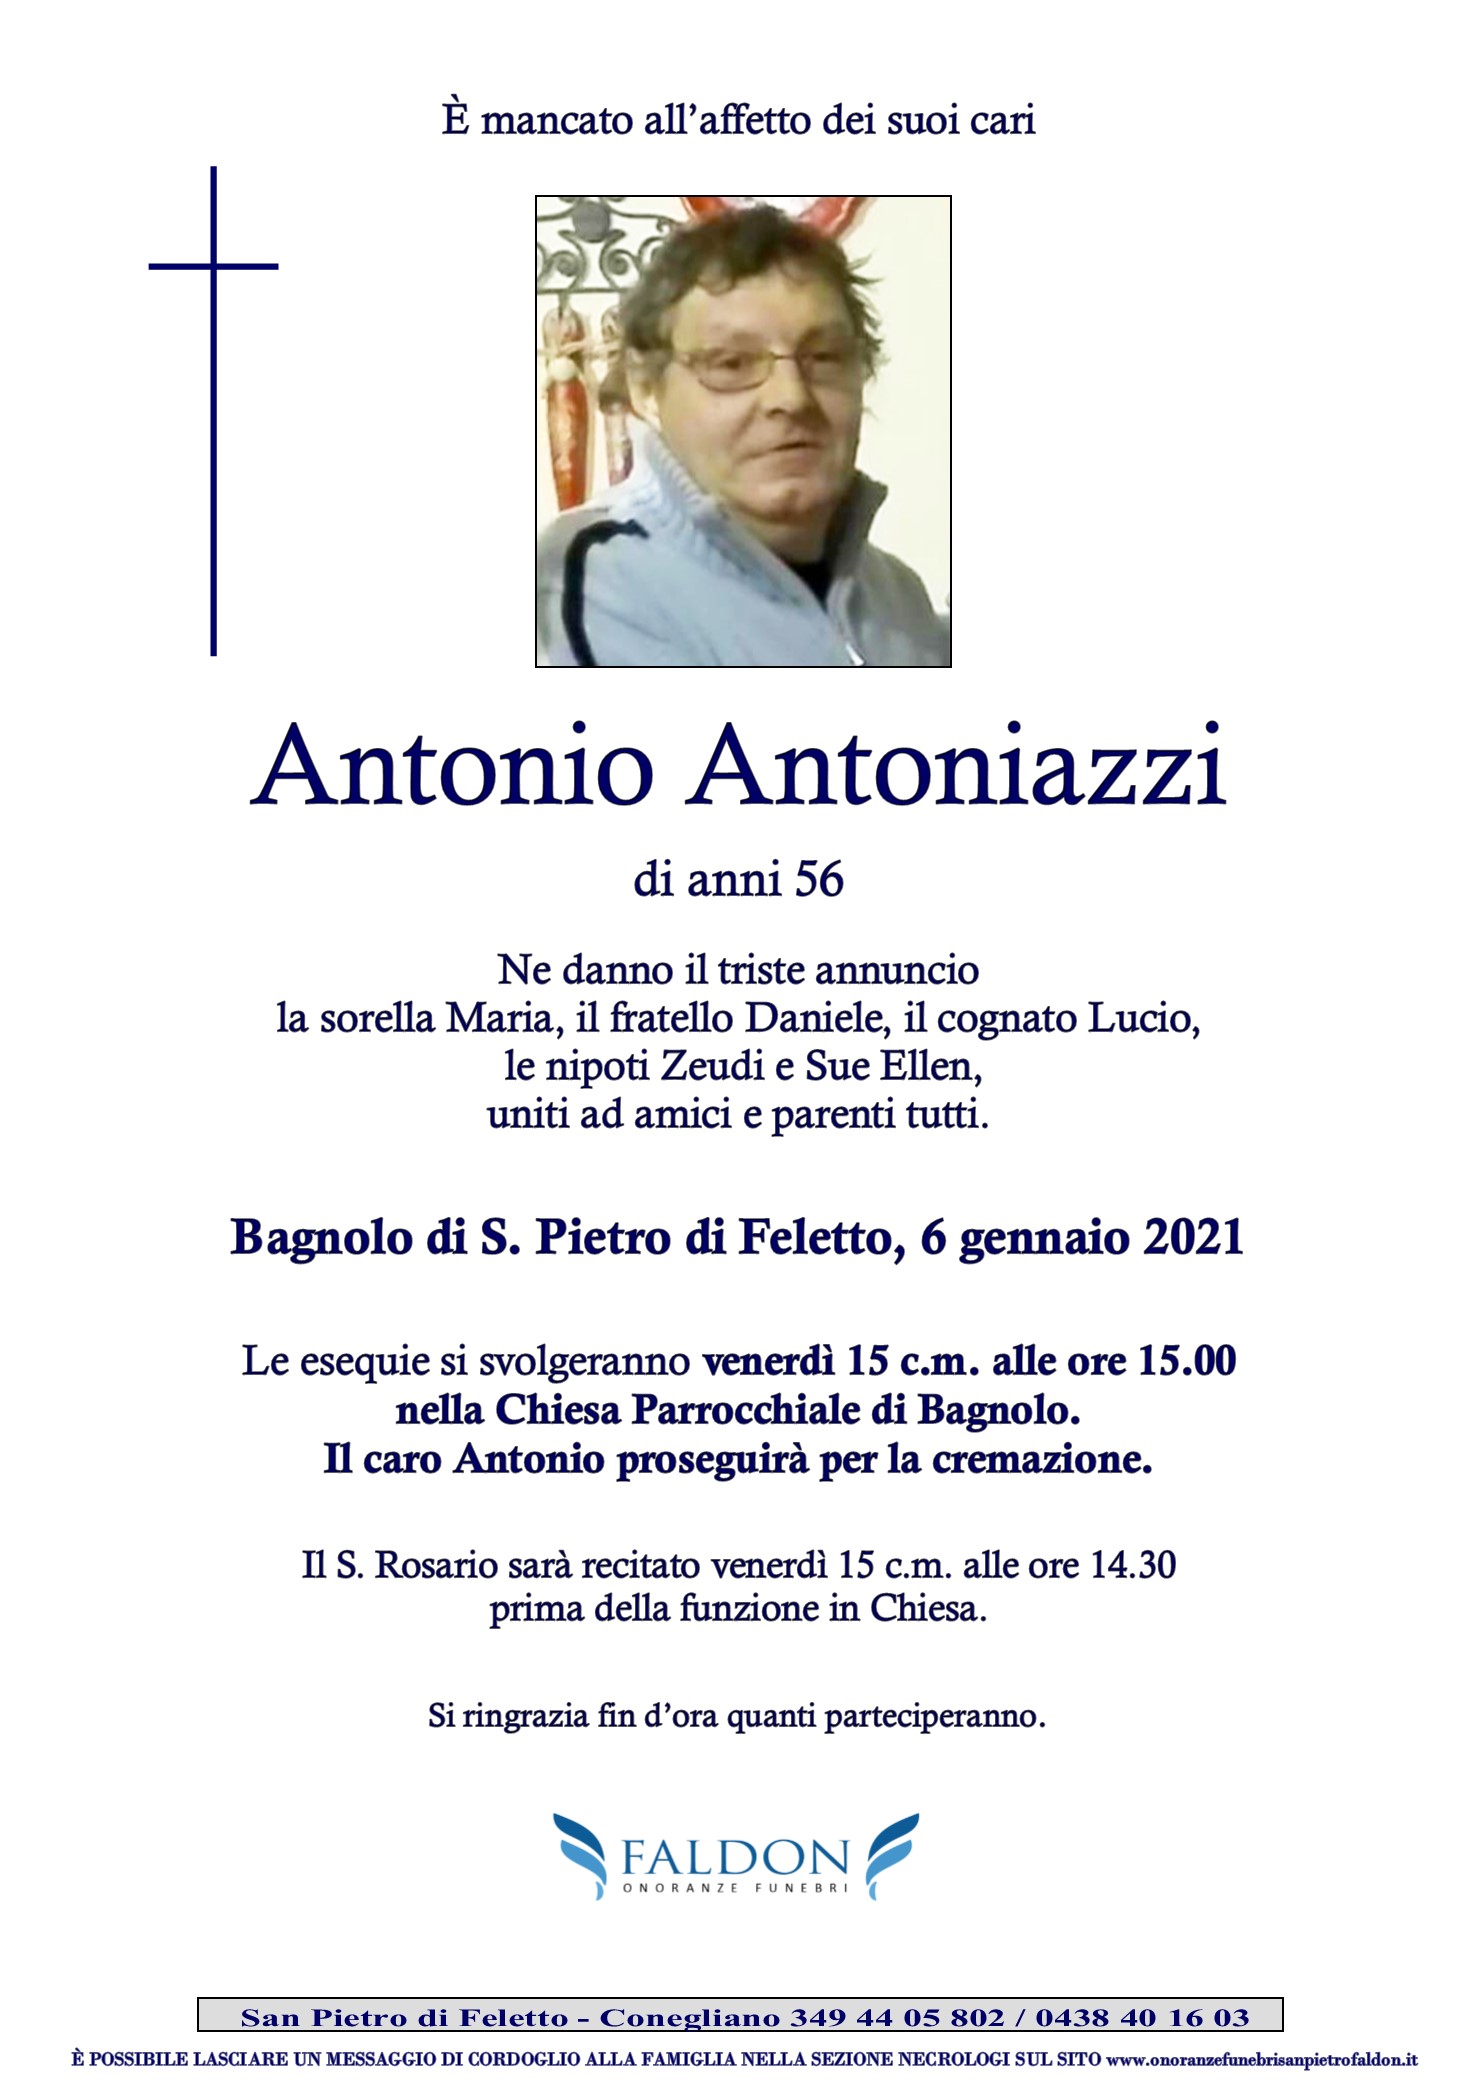 Antonio Antoniazzi